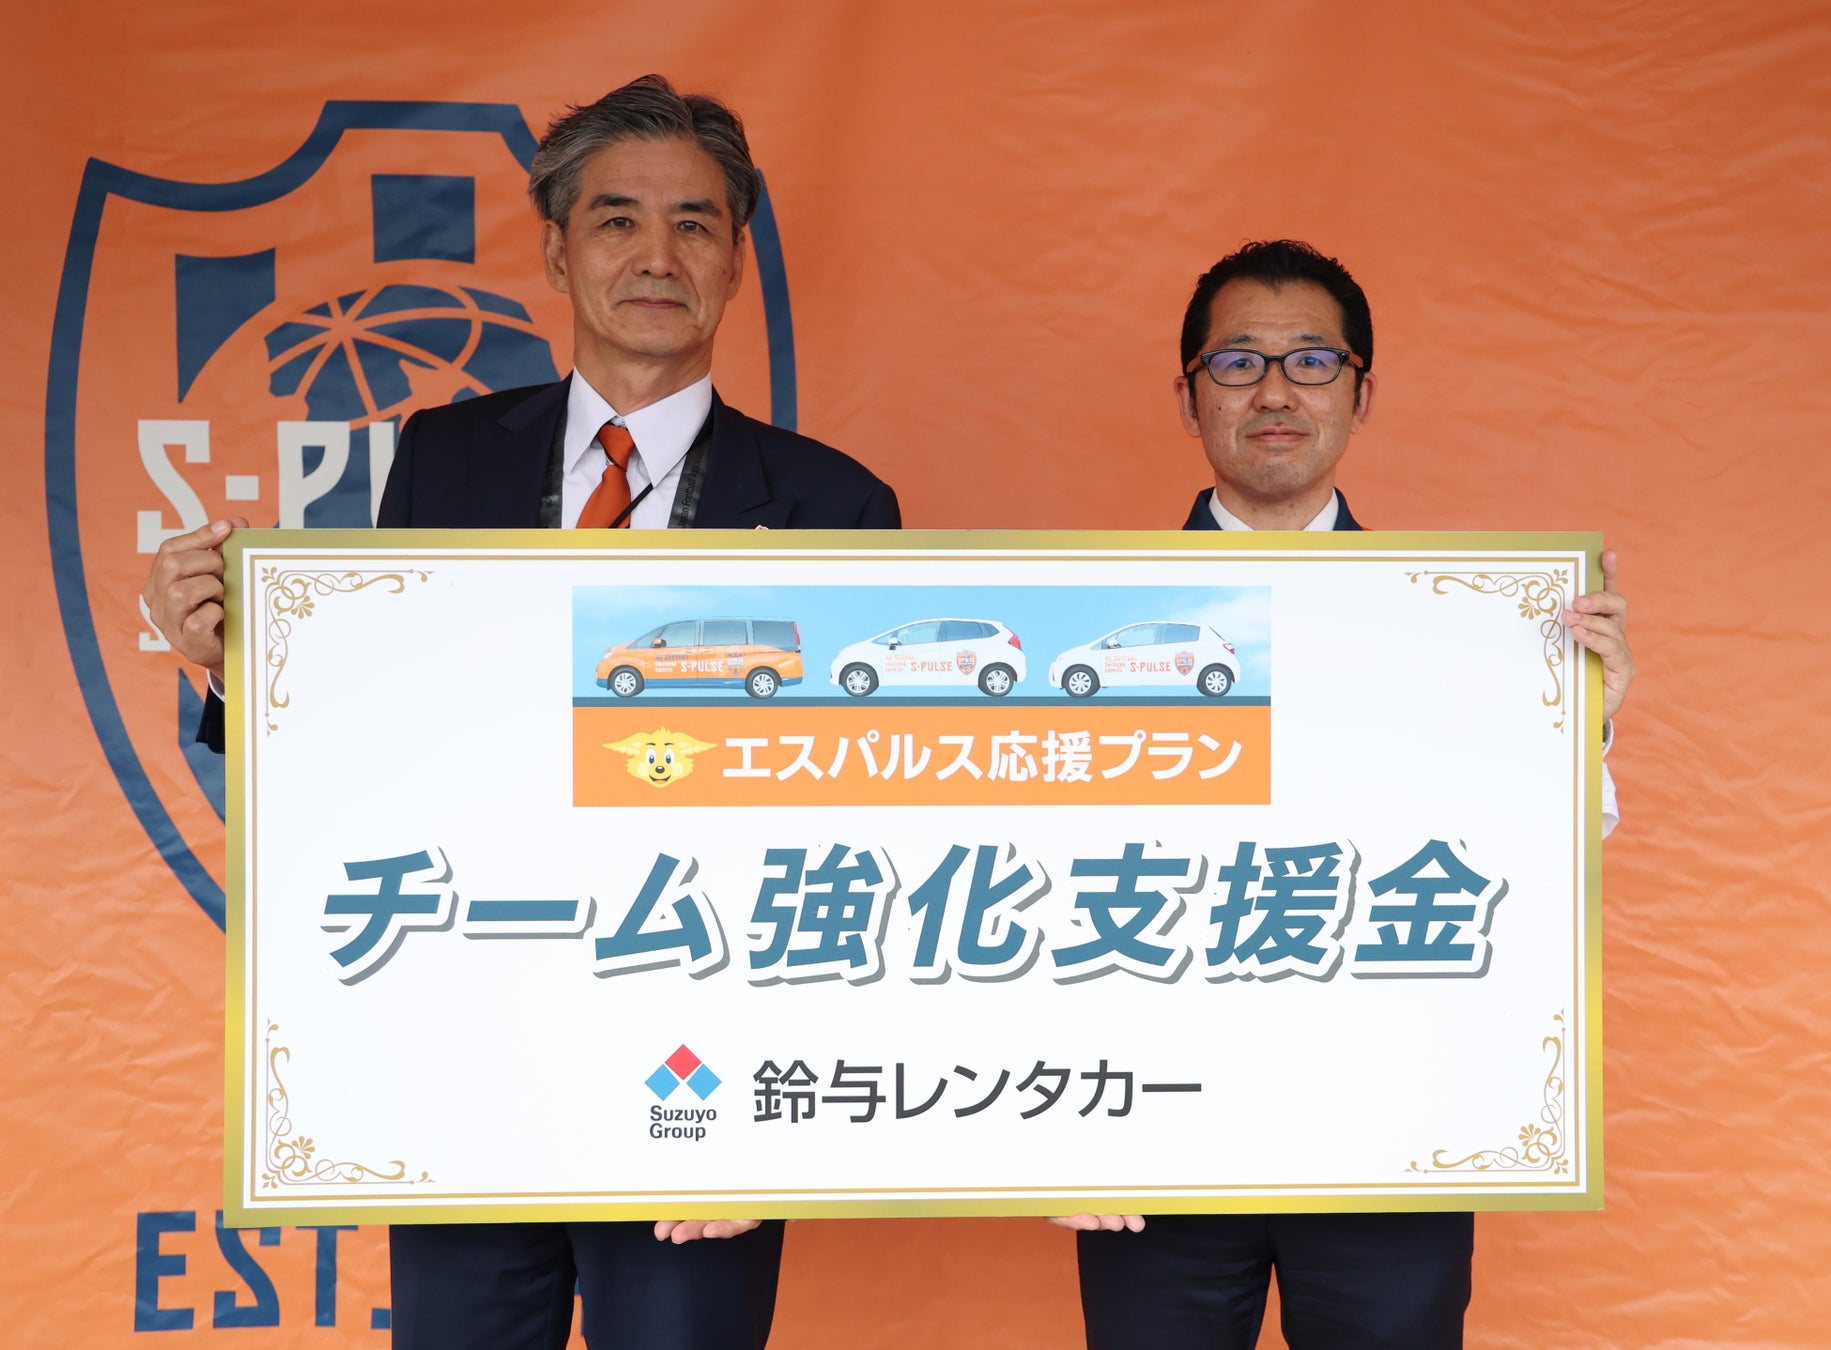 鈴与レンタカー株式会社「エスパルス応援プラン」の清水エスパルスチーム強化支援金贈呈について